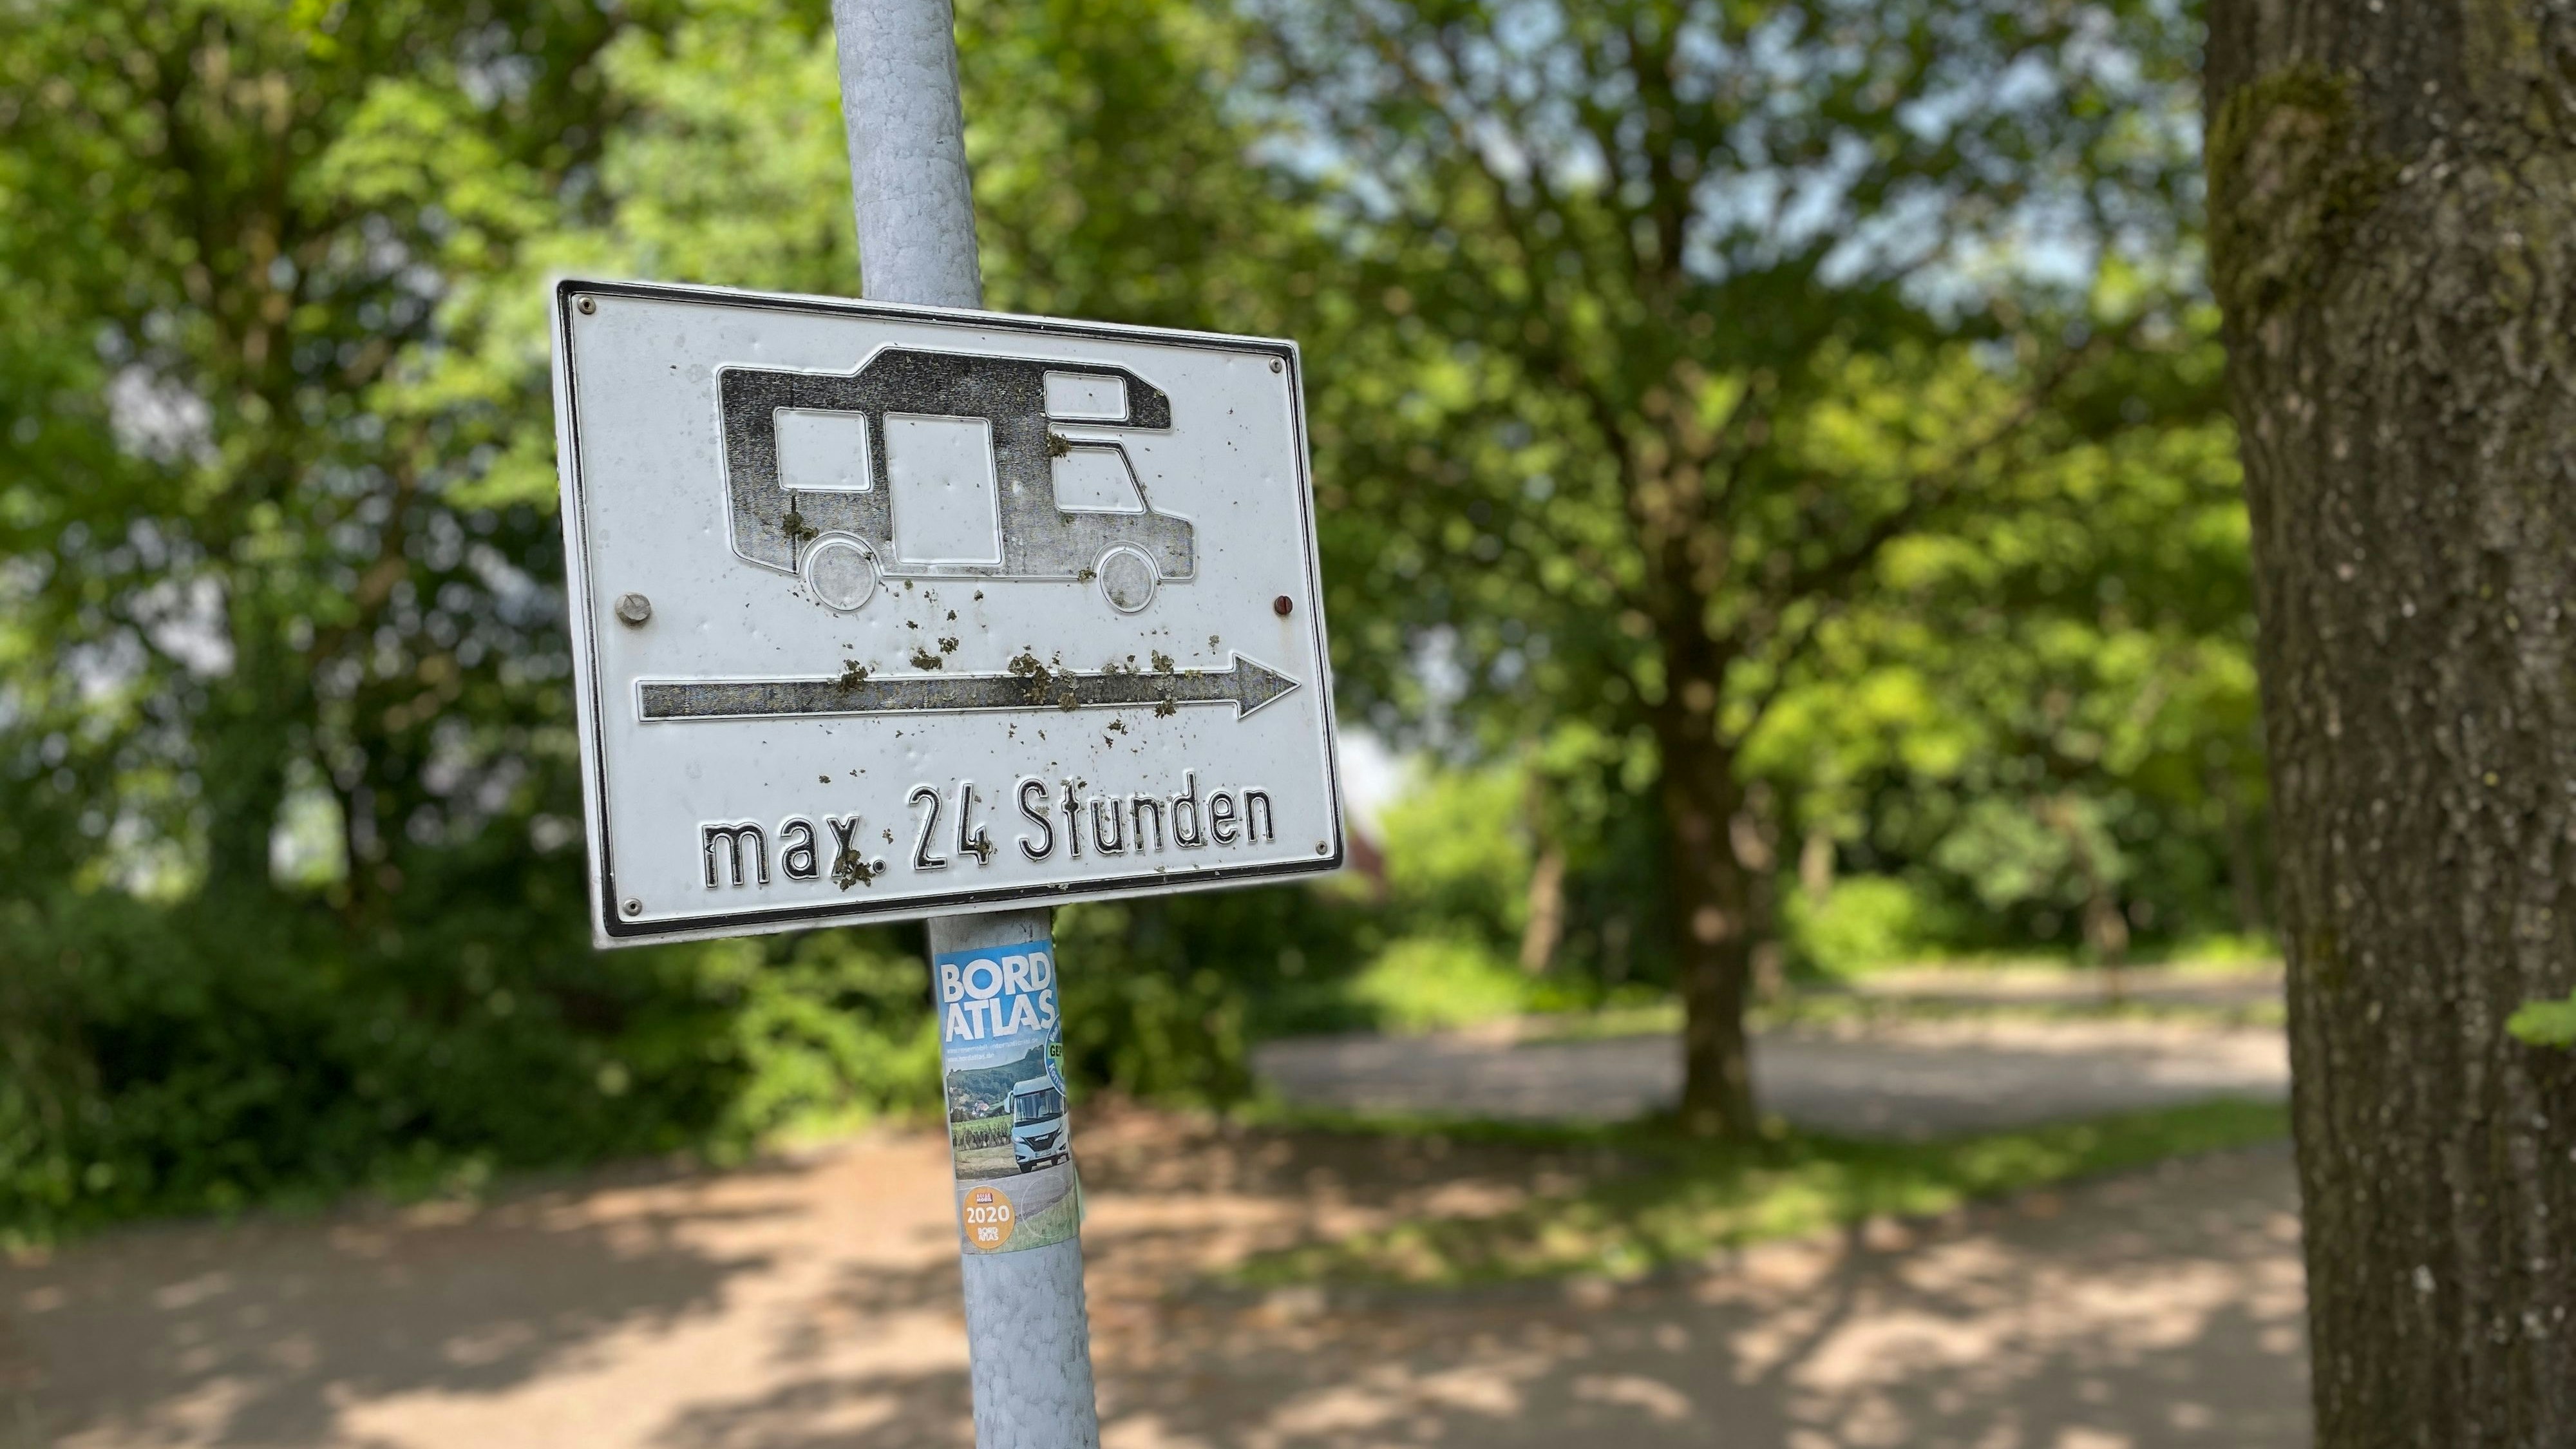 Mehr Platz für Wohnmobile: Die Stadt Cloppenburg möchte mehr Stellplätze schaffen. Der bestehende Platz am Museumsdorf soll ausgebaut werden. Foto: Dickerhoff